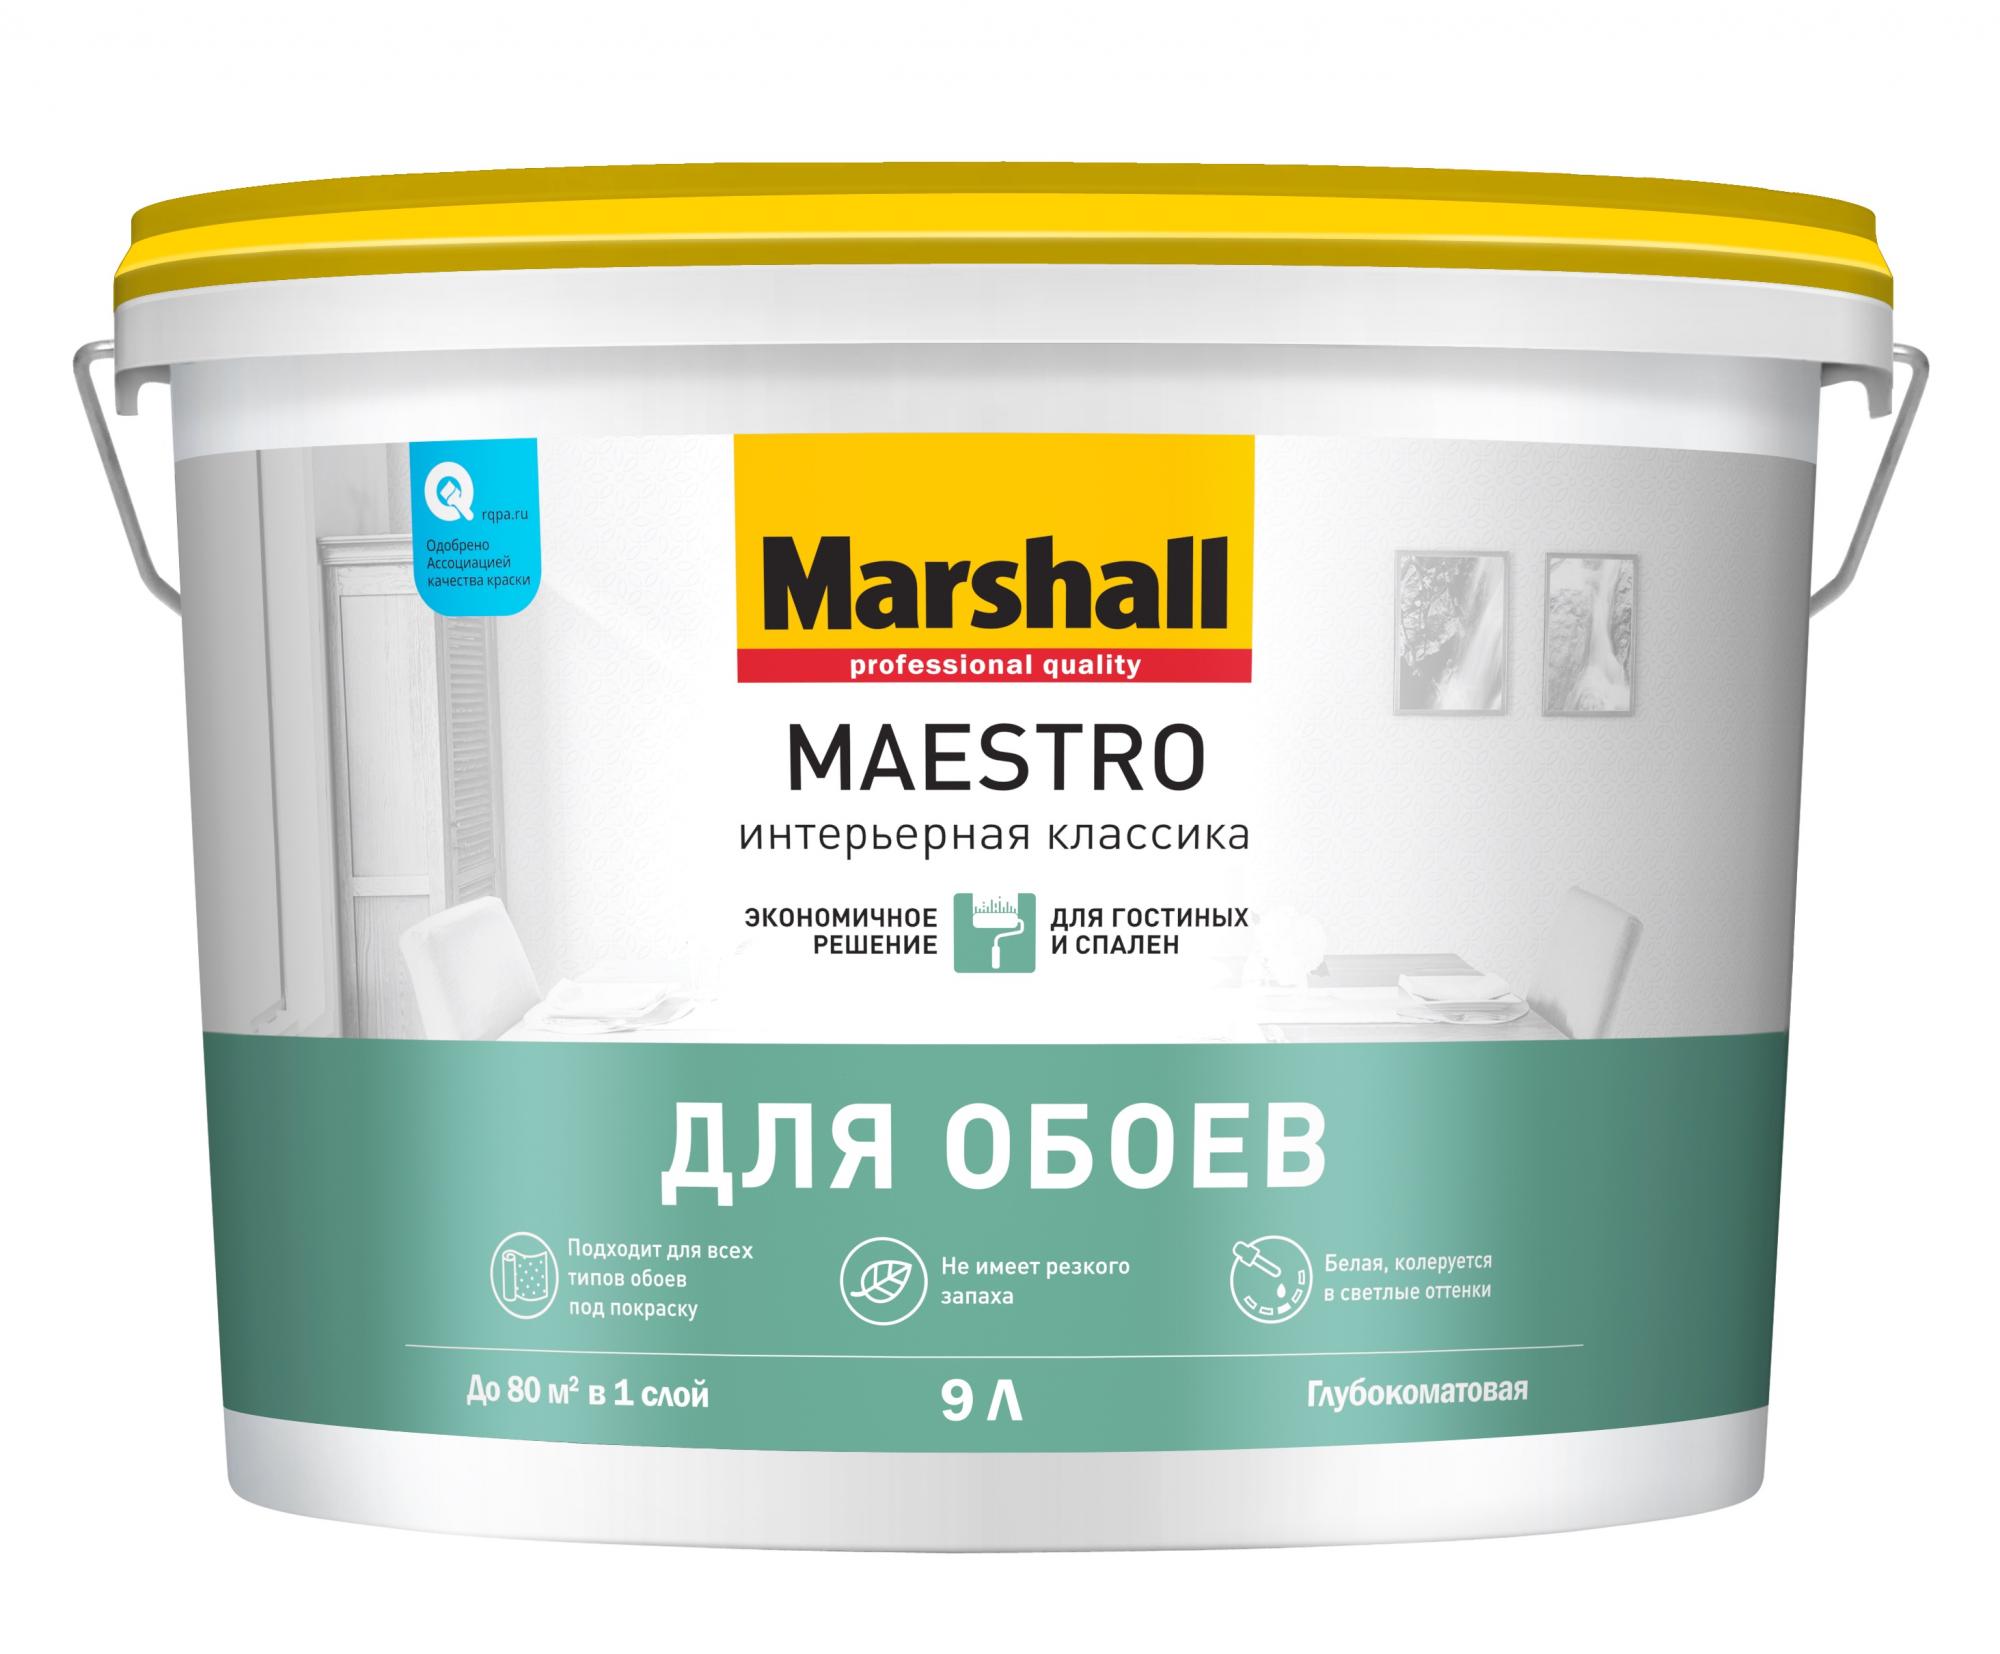 Обои без запаха. Краска фасадная Marshall Maestro BW (Л). Краска Маршал для потолков супербелая. Командор facade Acryl Wood влагостойкая. Маршал Акрикор фасадная мат.база bс (2,5л) краска силикон-акриловая.